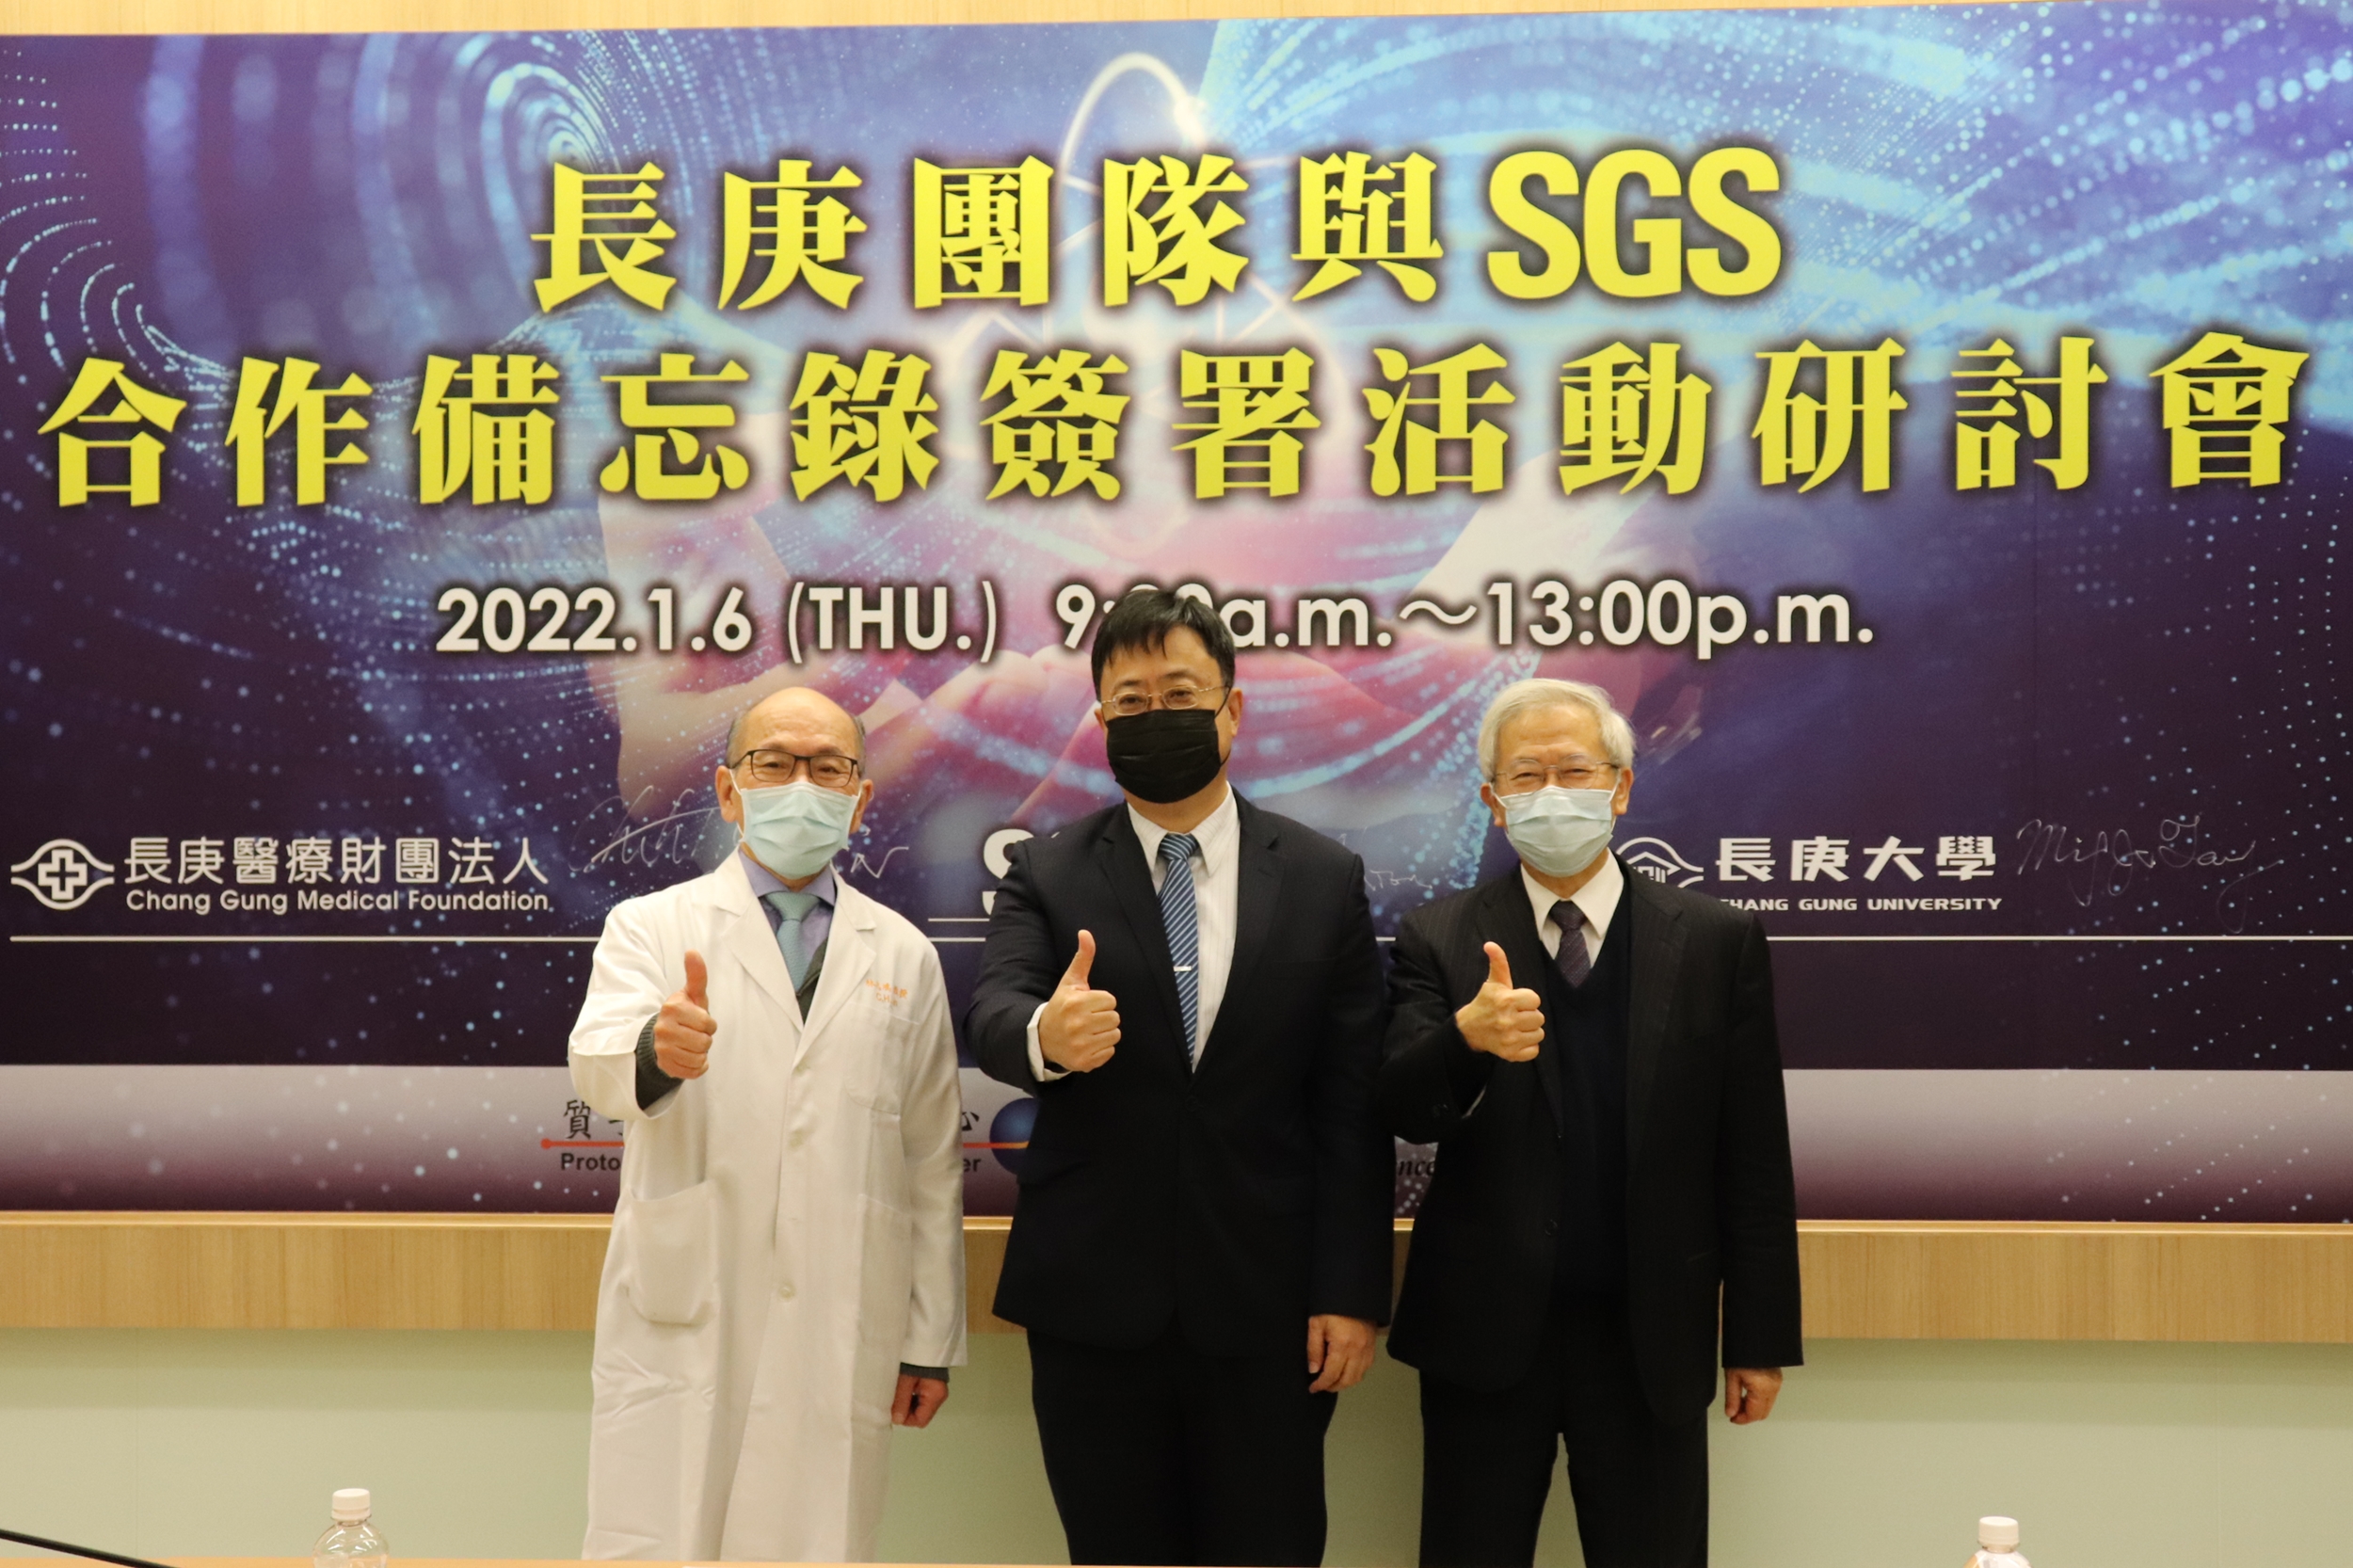 長庚大學湯明哲校長(圖右)、林口長庚醫院林志鴻副院長(圖左)與SGS邱志宏總裁(圖中)代表三方簽署合作備忘錄。